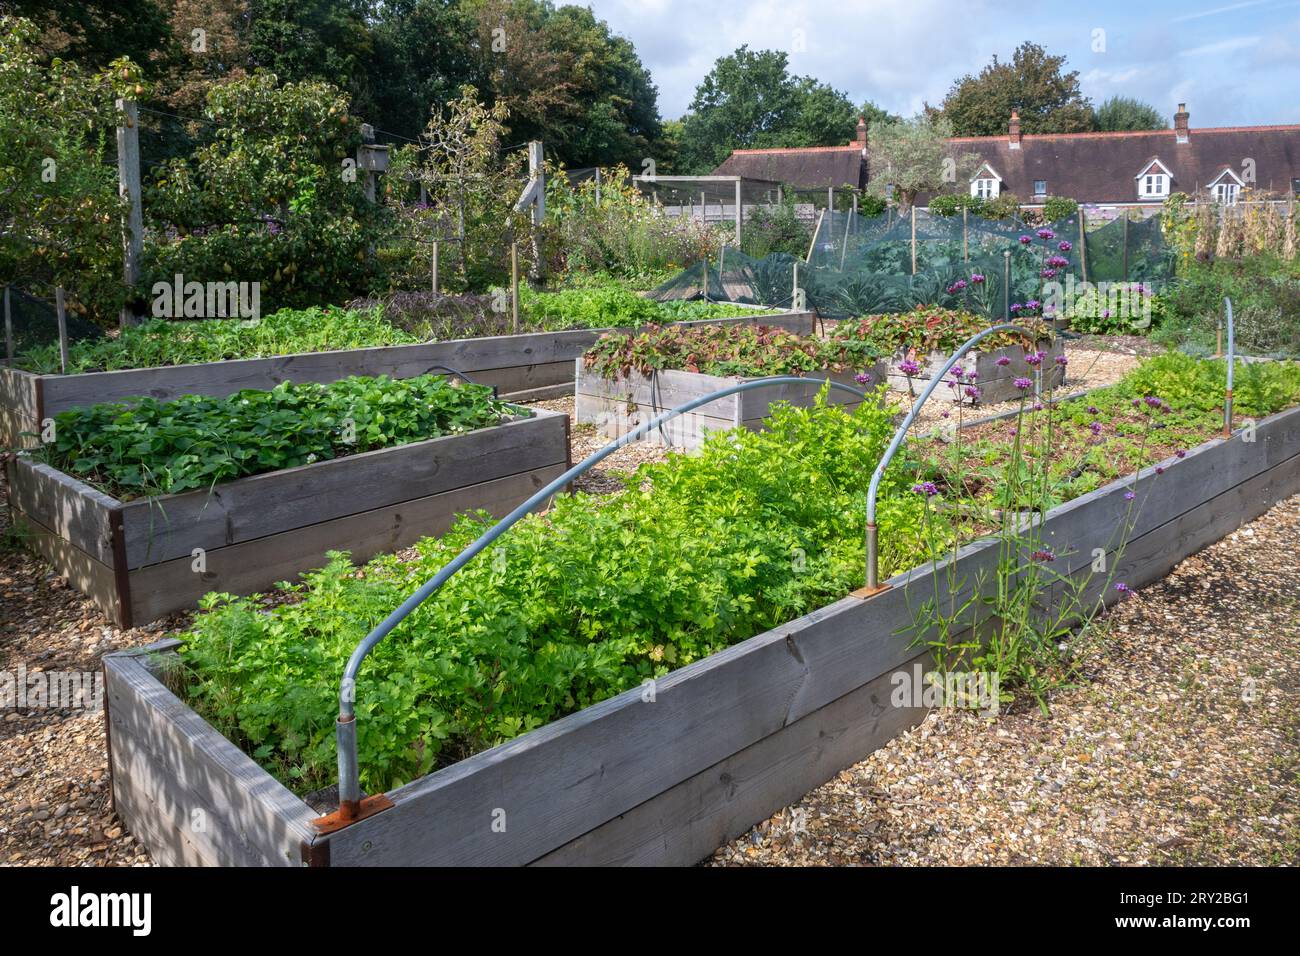 Vue de lits surélevés dans Patrick's Patch, un jardin communautaire à Beaulieu, Hampshire, Angleterre, Royaume-Uni. Cultiver des légumes pour les entreprises locales Banque D'Images